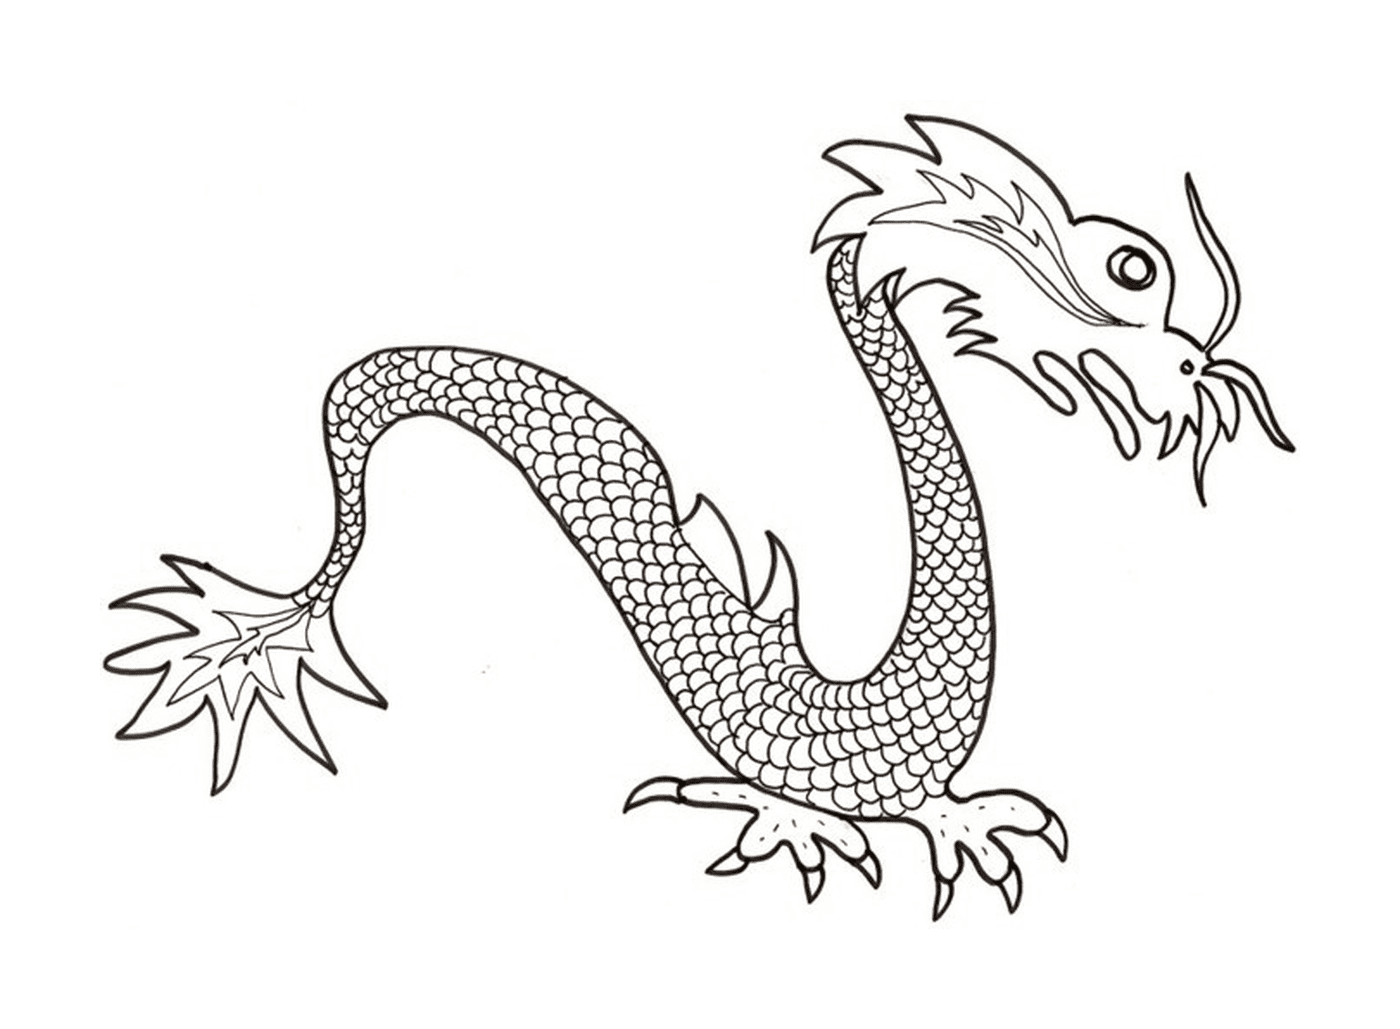  Простой и элегантный китайский дракон 